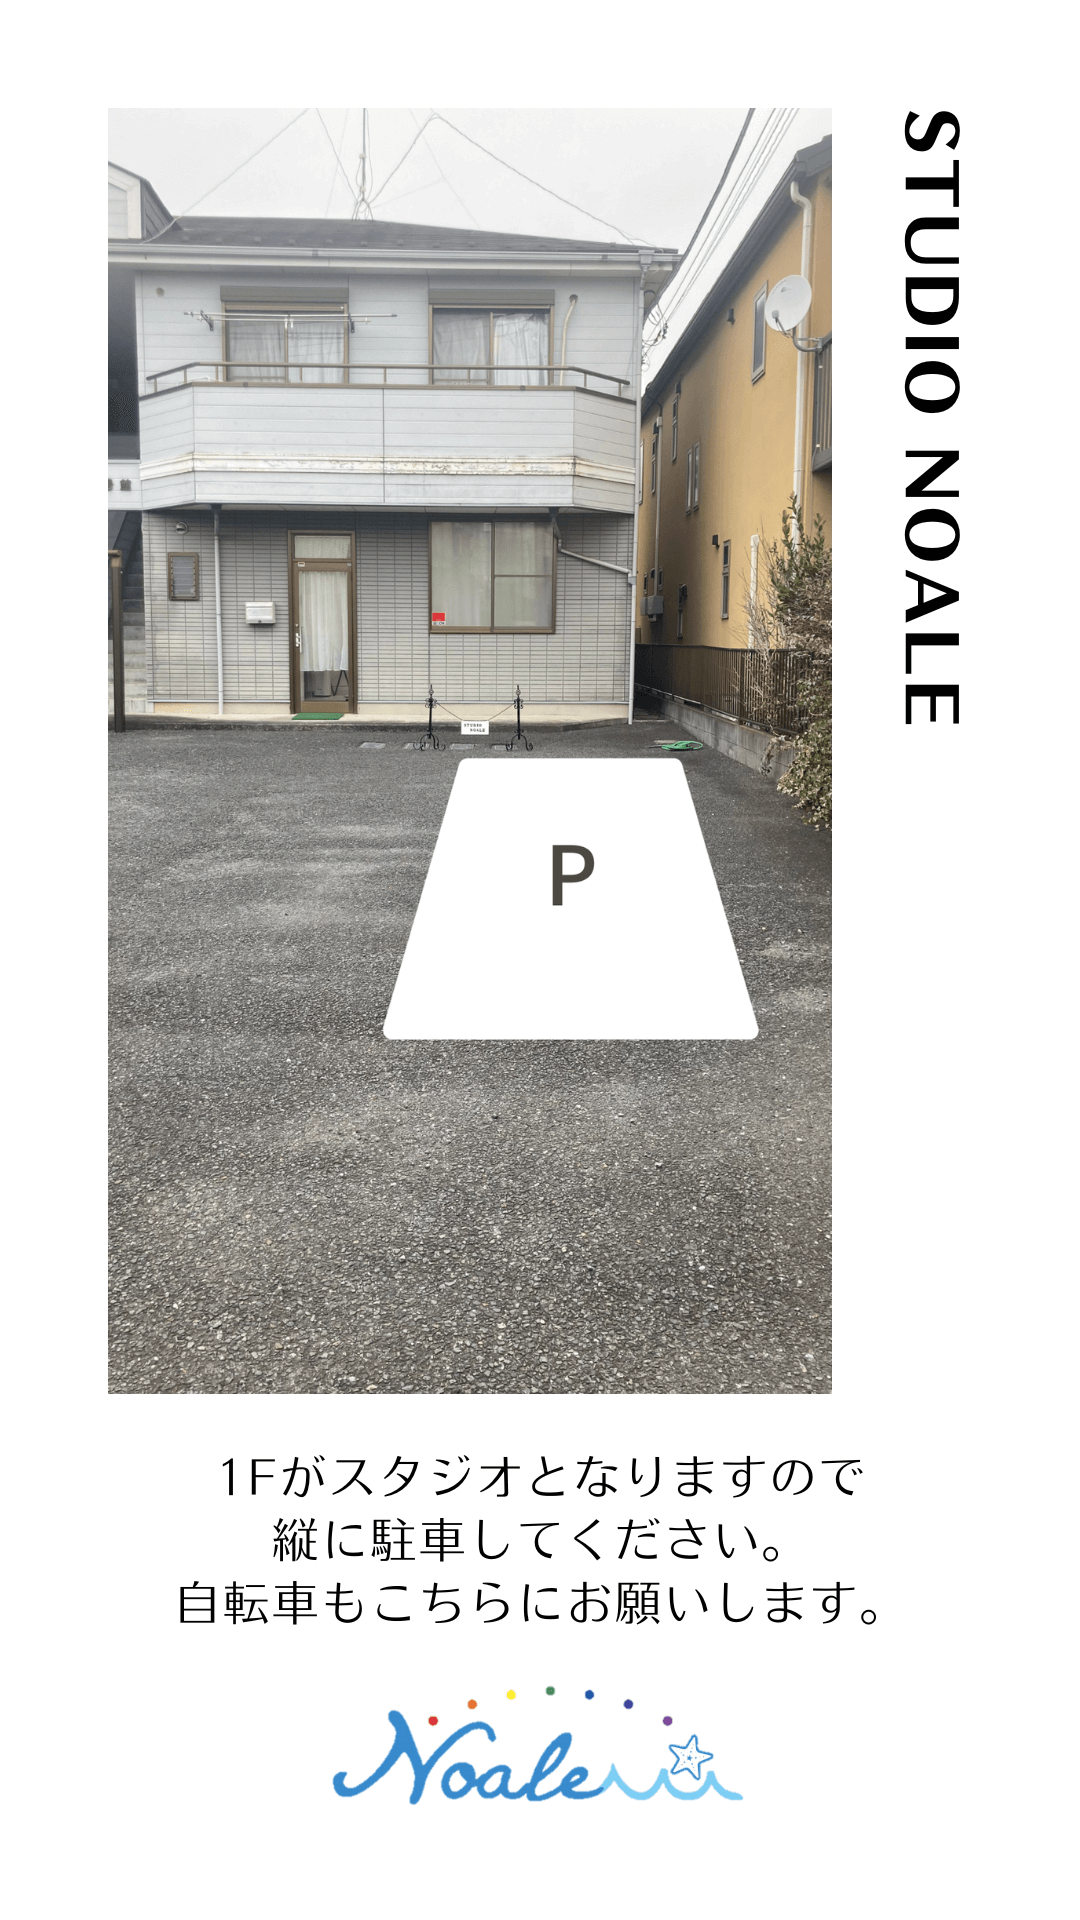 parking-area